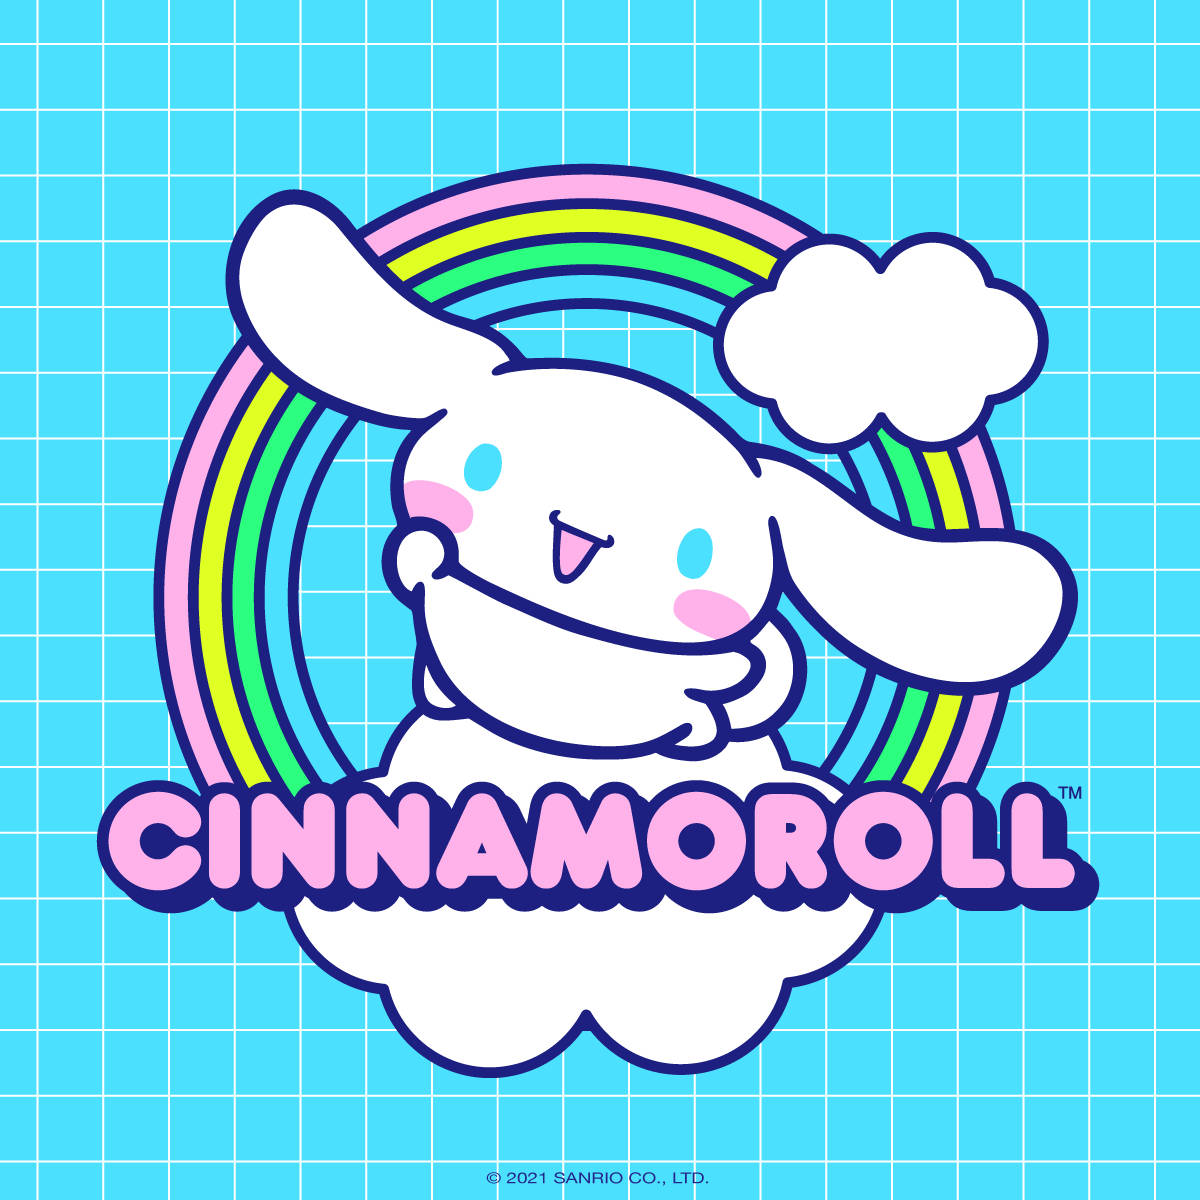 Cinnamoroll Rainbow Logo Background